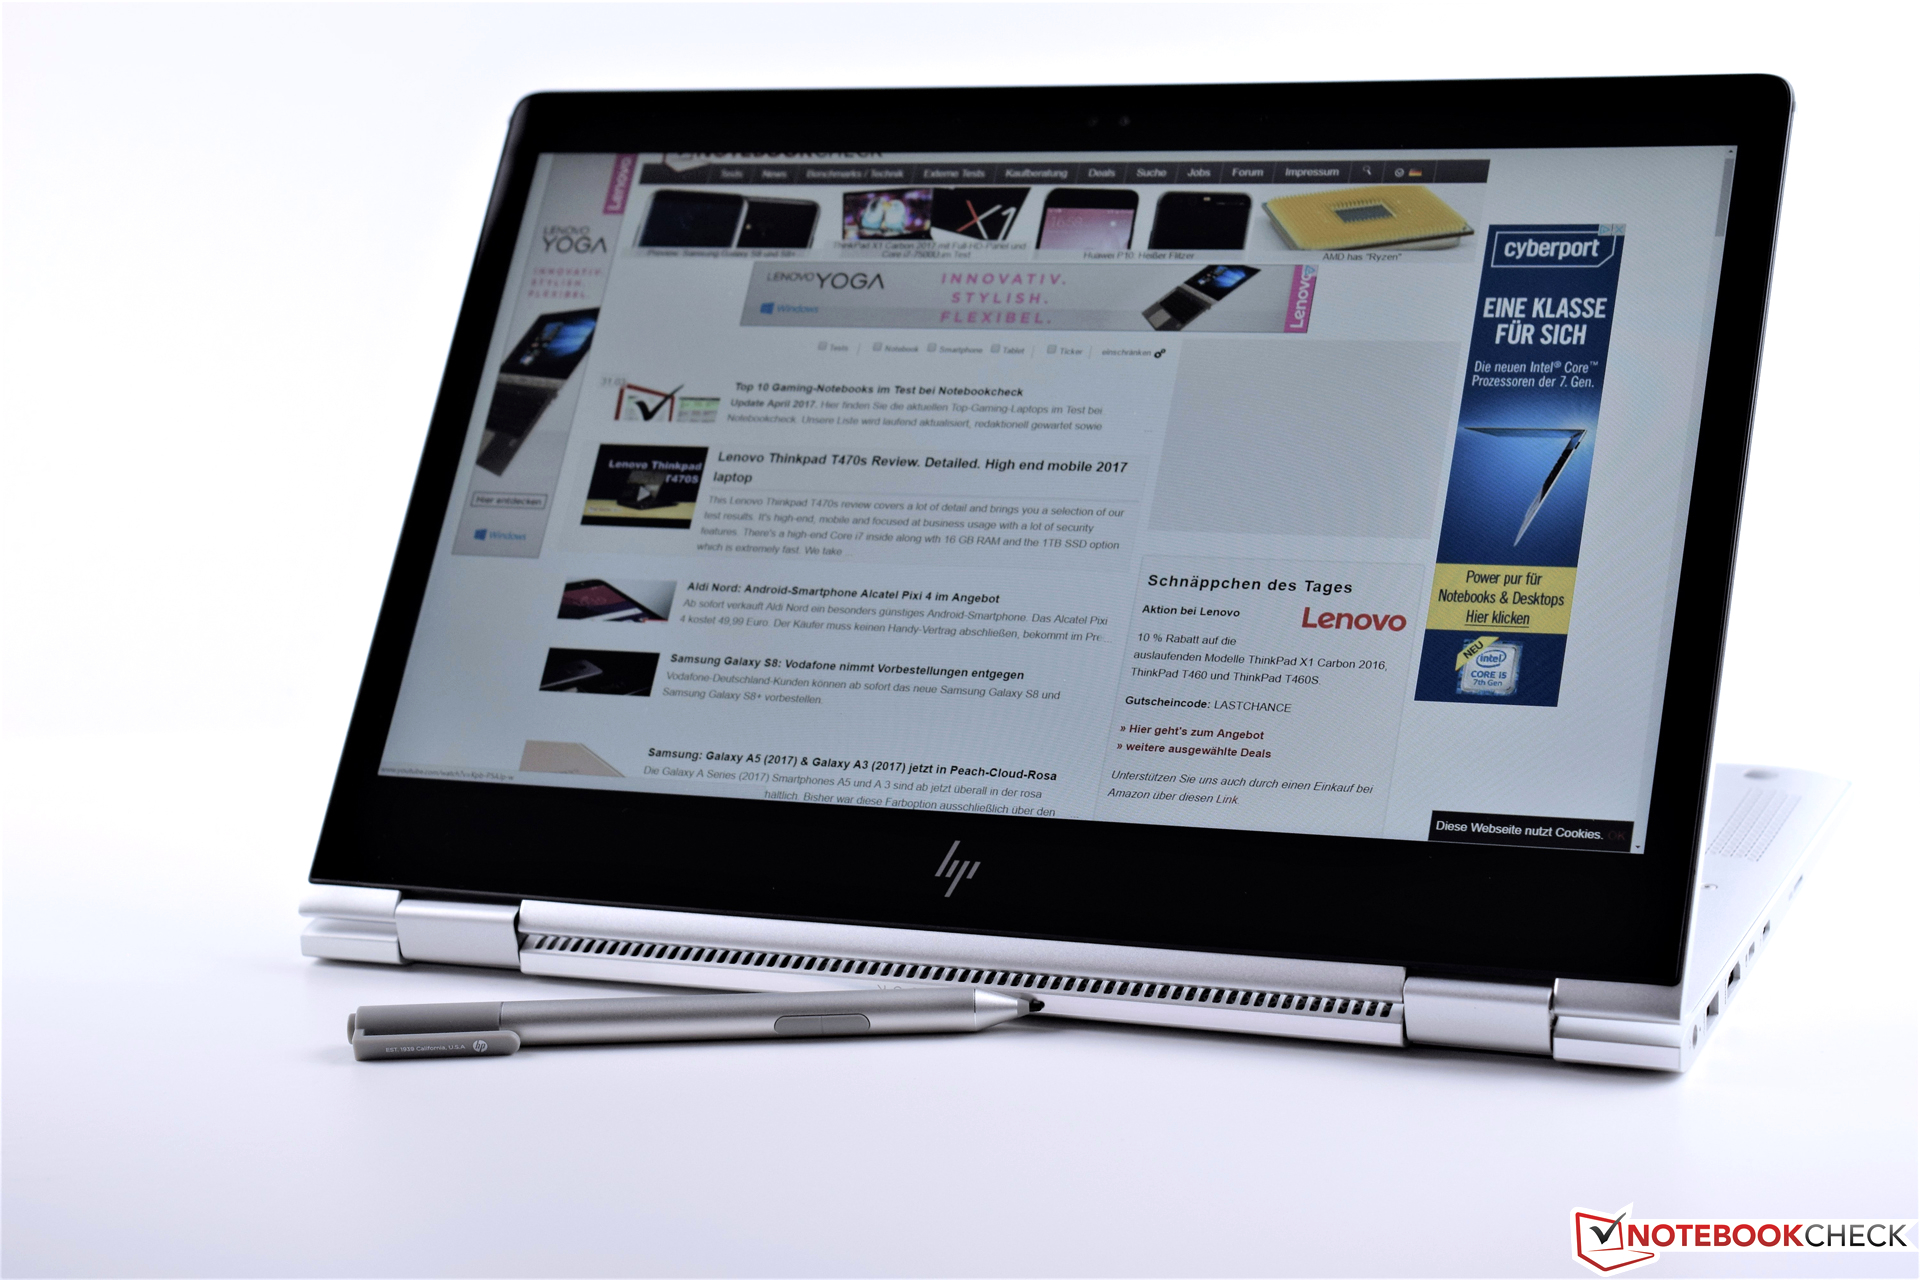 惠普 EliteBook x360 1030 G2 (Core i5, 全高清) 变形本简短评测 ...